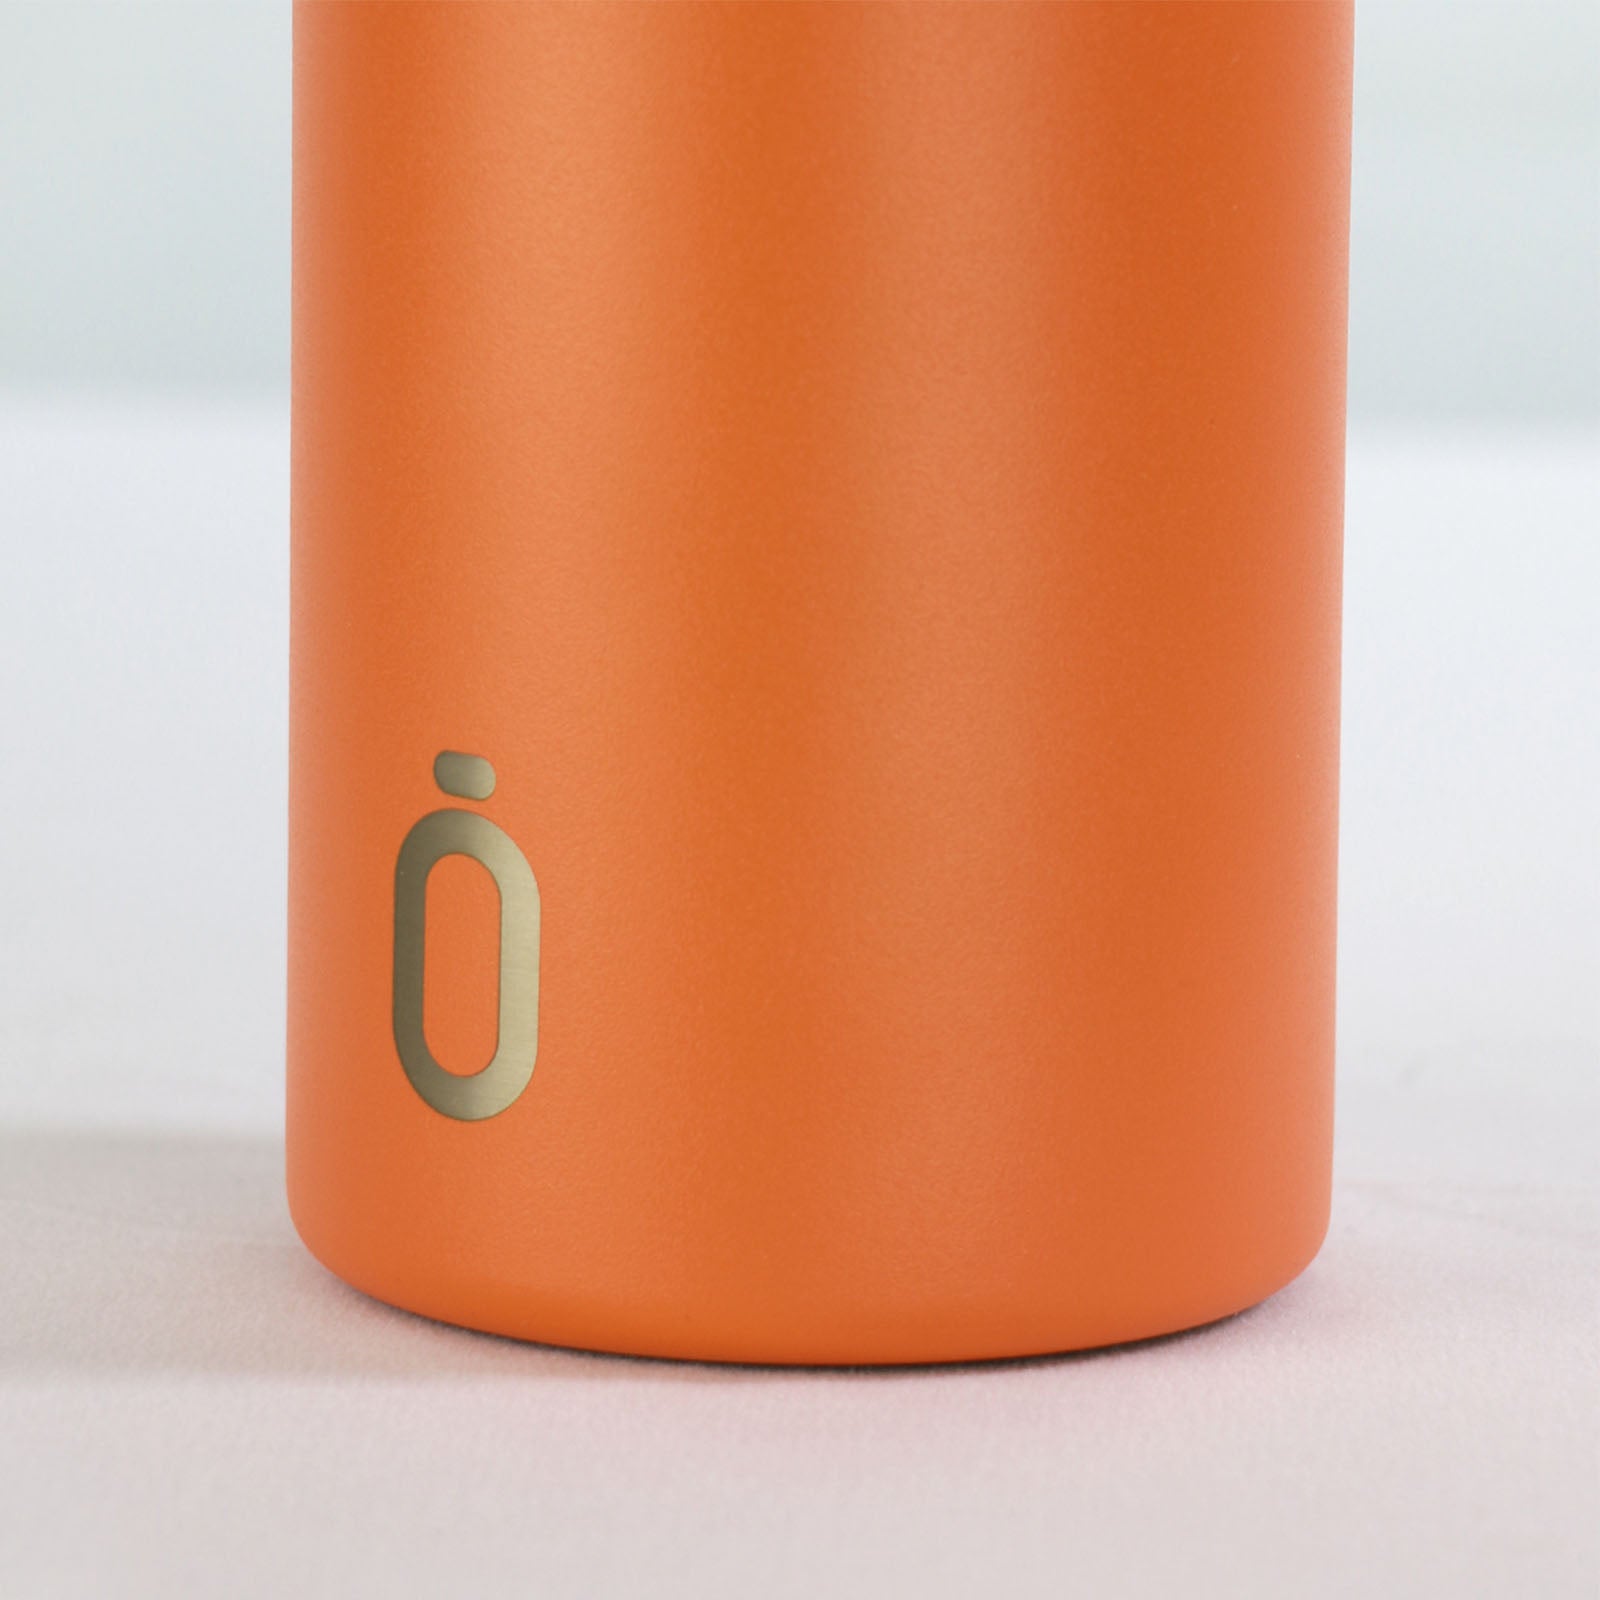 Runbott Sport - Botella Térmica Reutilizable de 0.6L con Interior Cerámico. Naranja